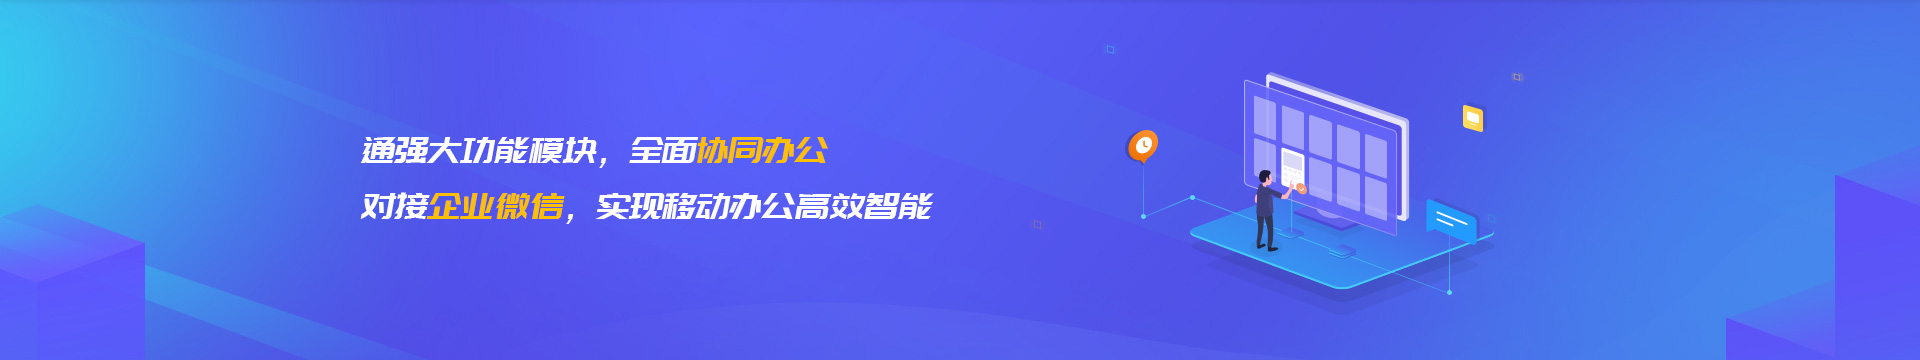 天津企业微信开发